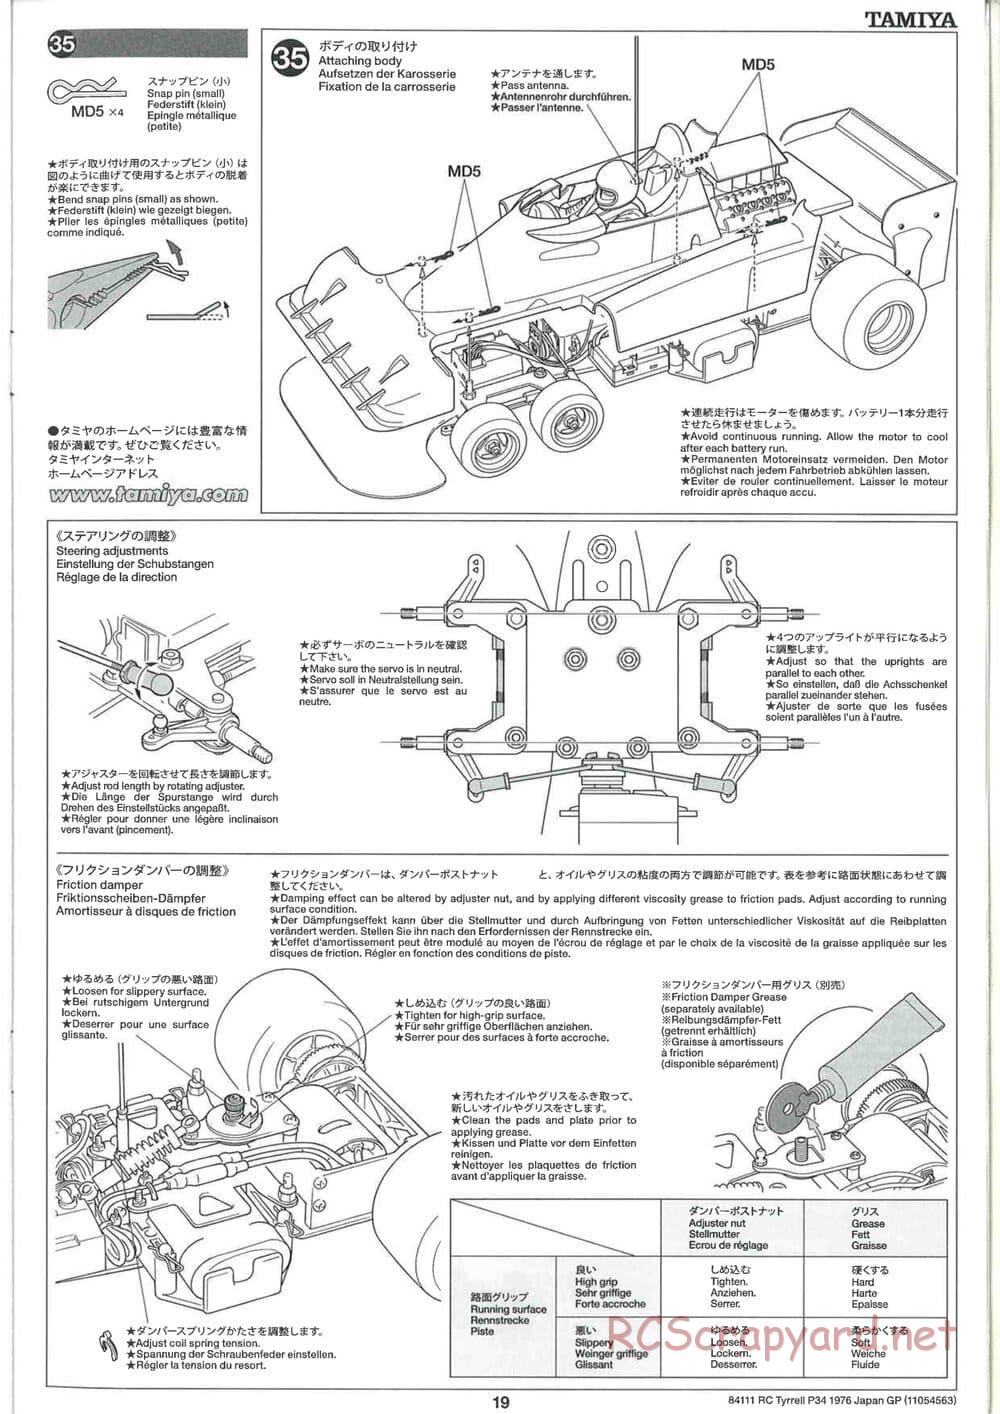 Tamiya - Tyrrell P34 1976 Japan GP - F103-6W Chassis - Manual - Page 19